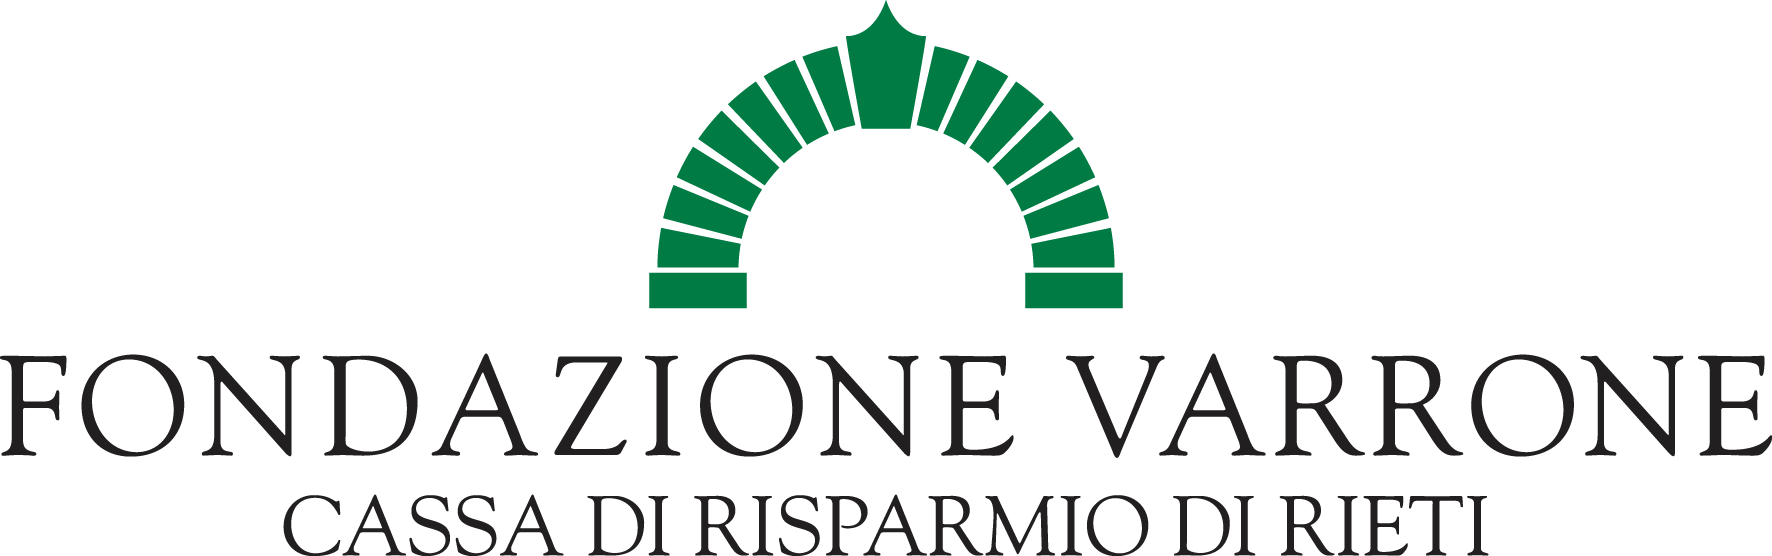 logo fondazione Varrone